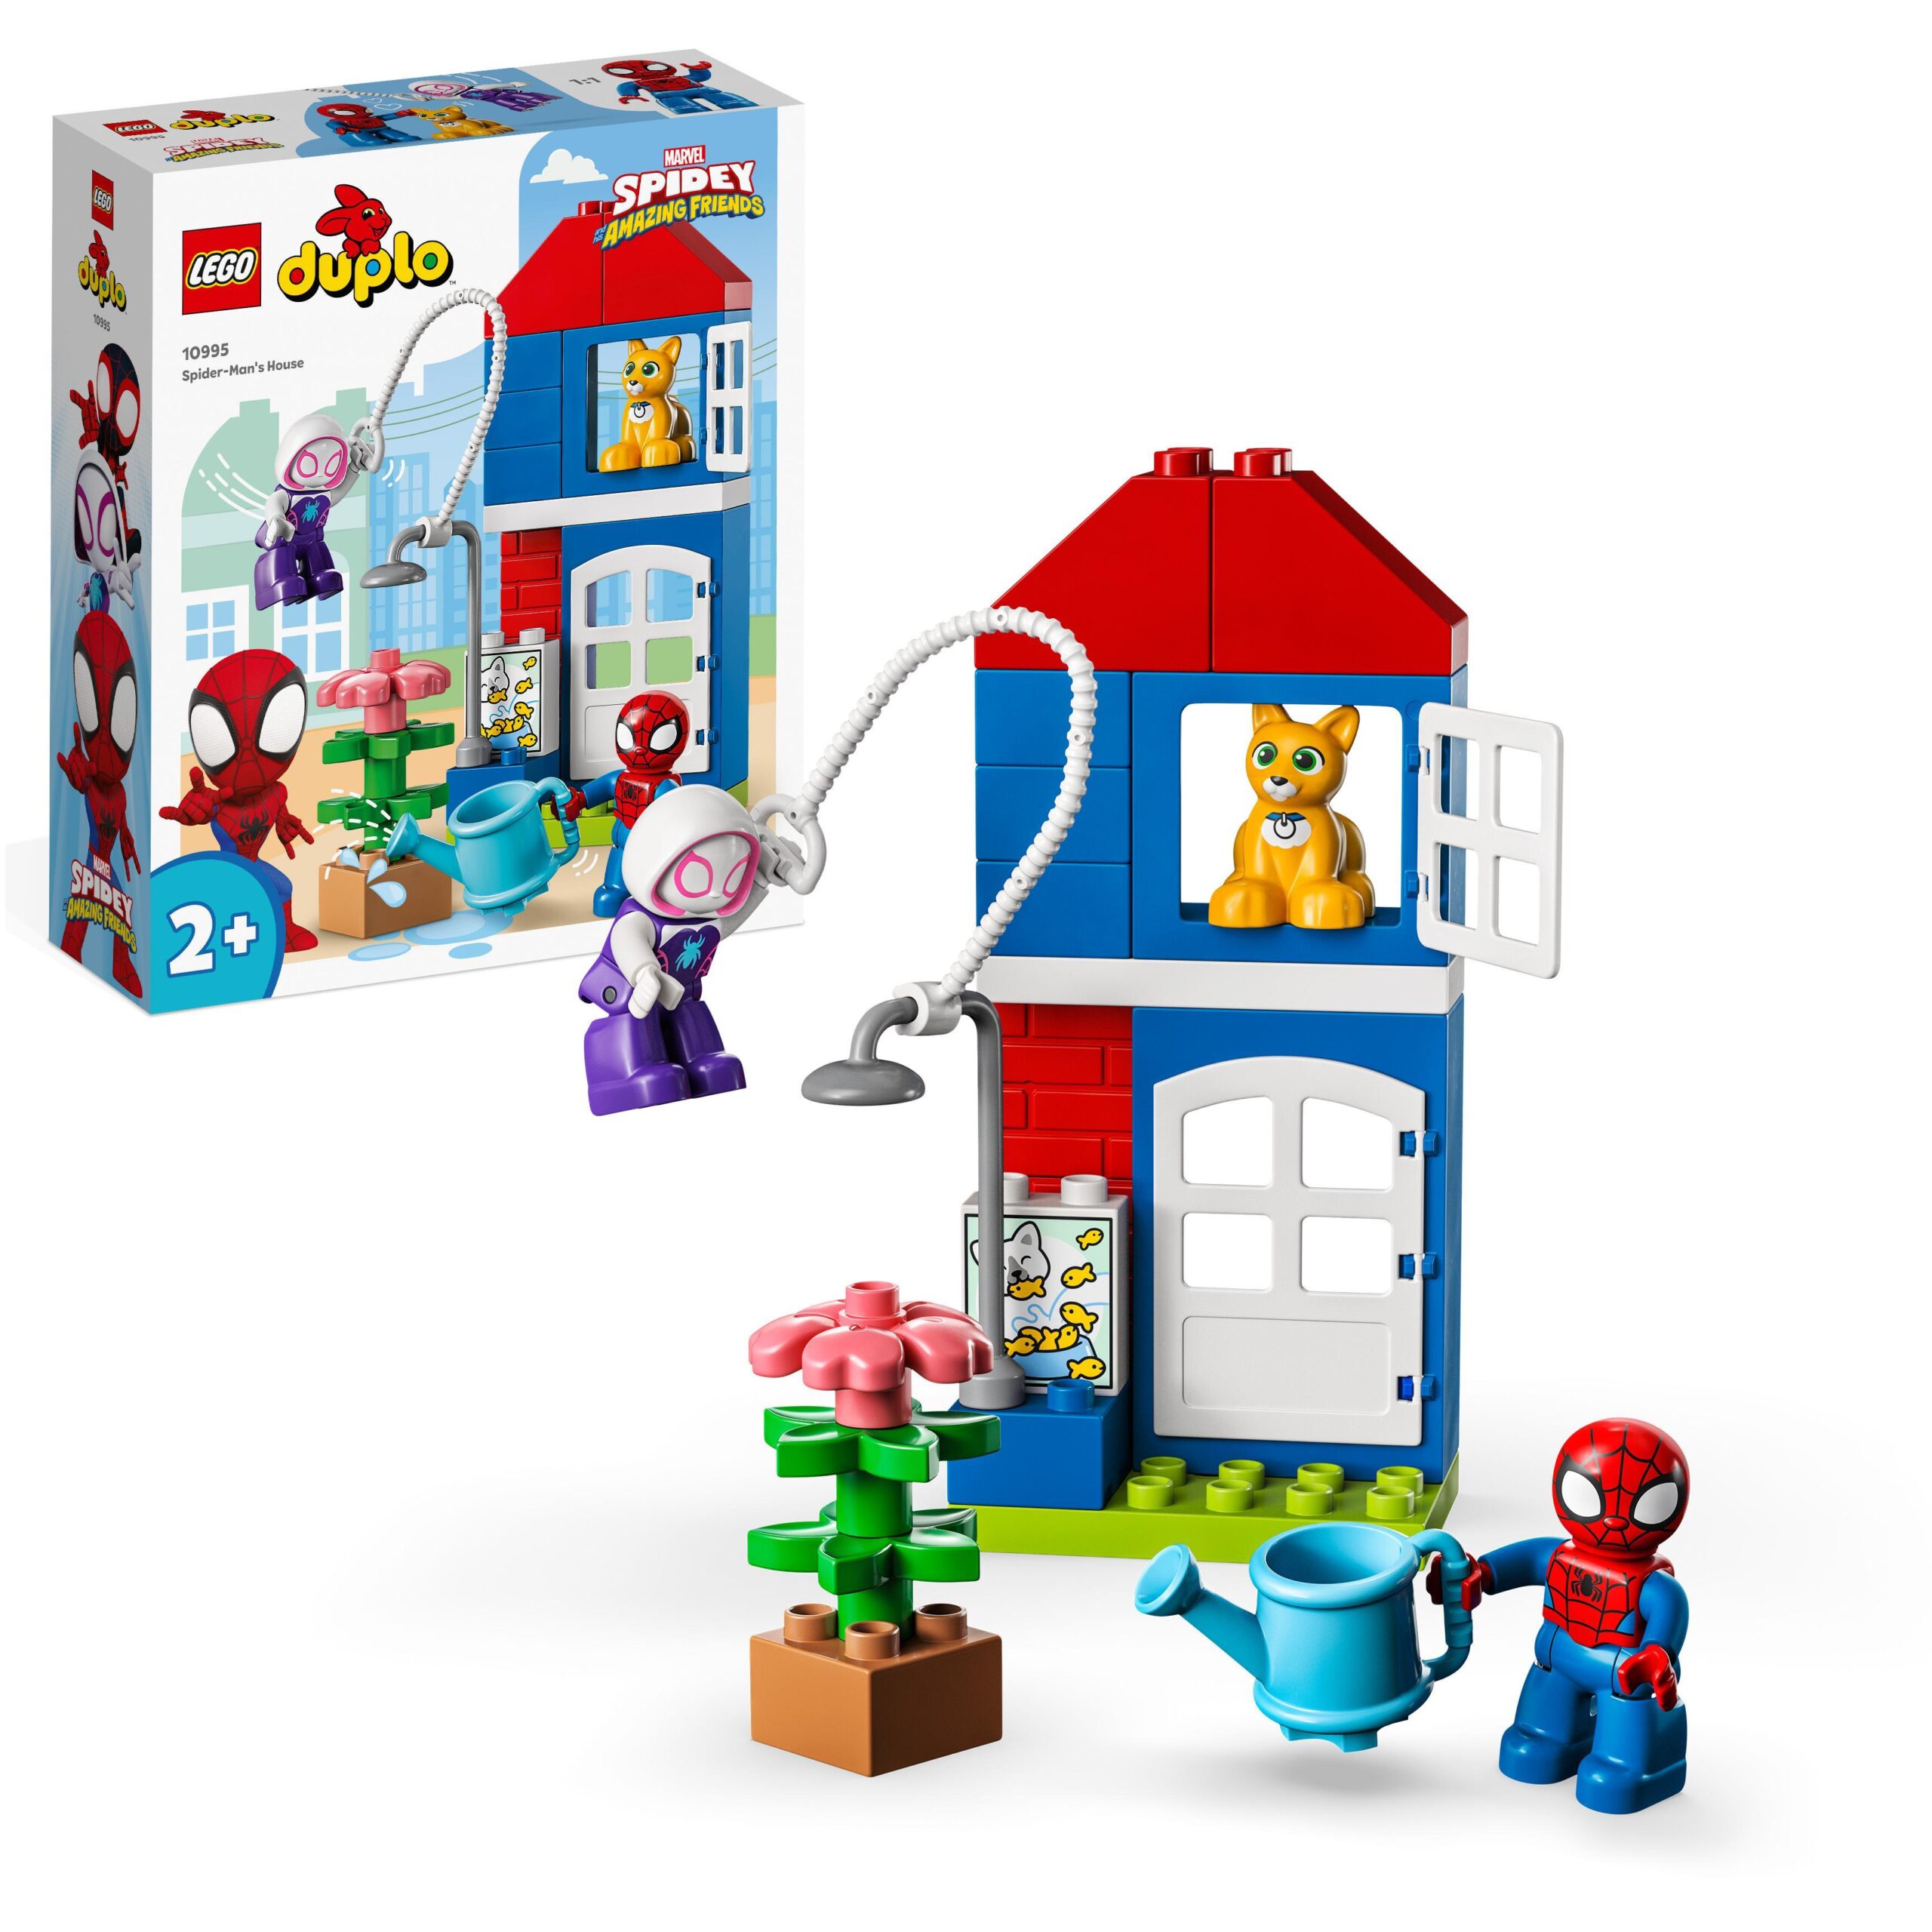 Lego duplo marvel 10995 la casa di spider-man, set di giochi con spidey e i suoi fantastici amici, idea regalo supereroi - LEGO DUPLO, Spiderman